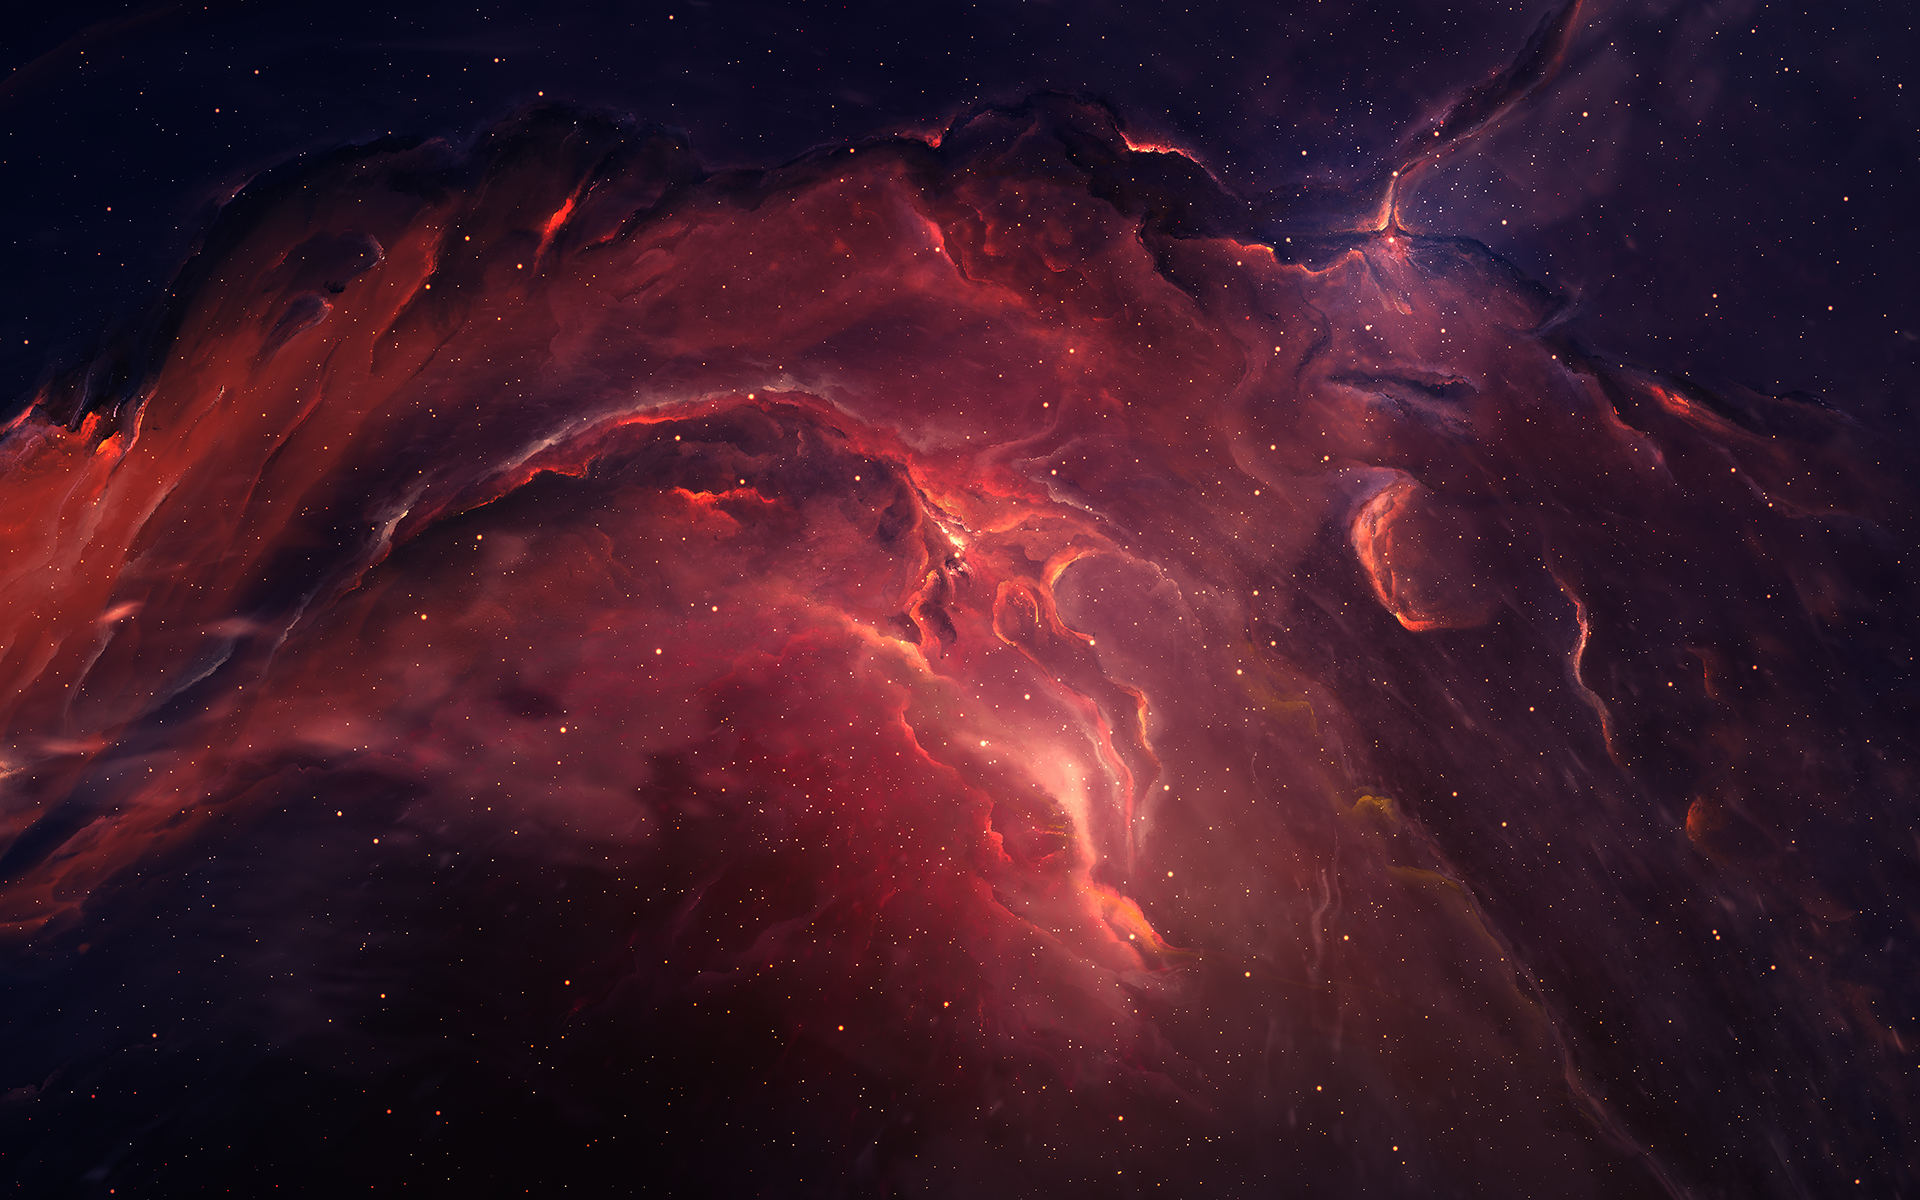 Eden Nebula 2 by Starkiteckt on DeviantArt